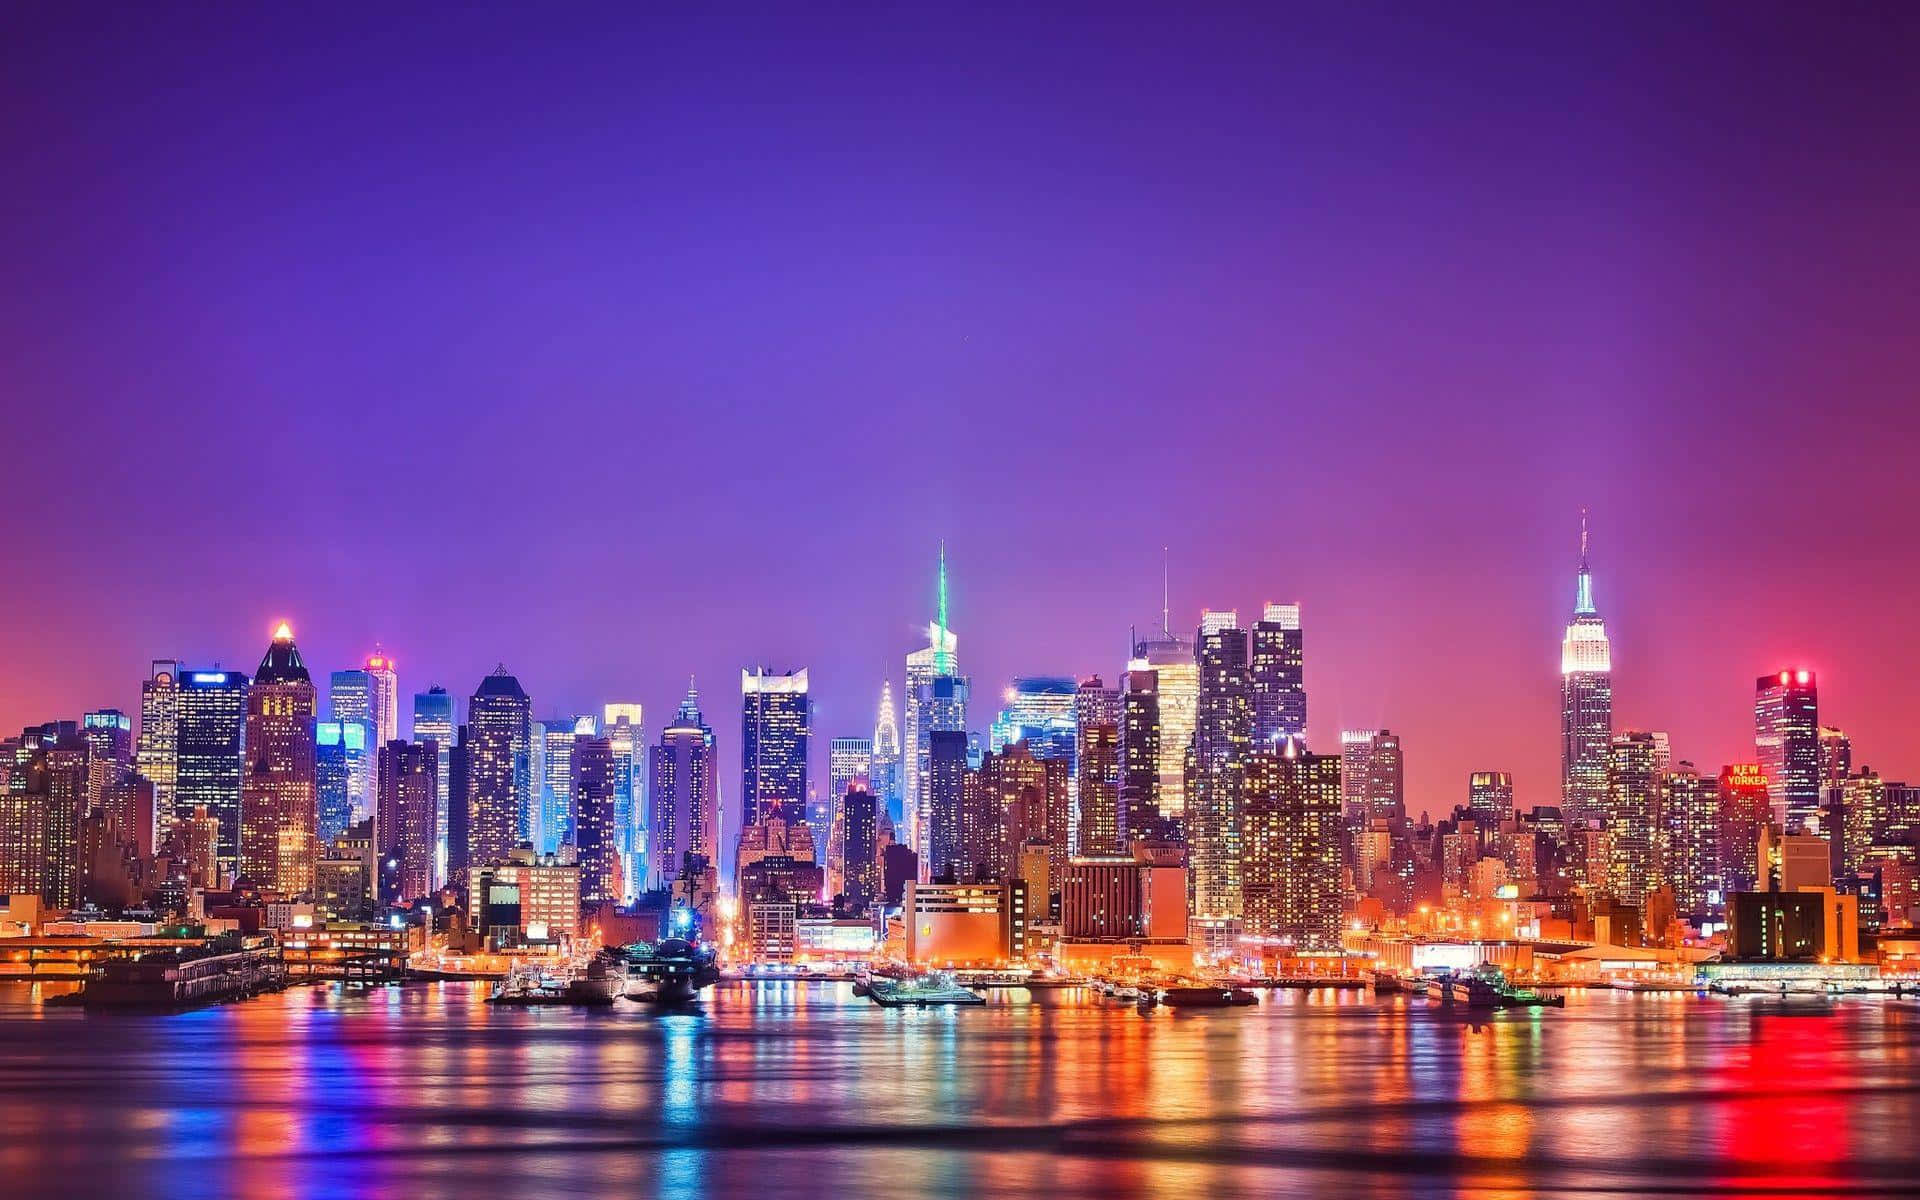 Imagenestética Del Cielo De La Ciudad De Nueva York Durante La Noche.